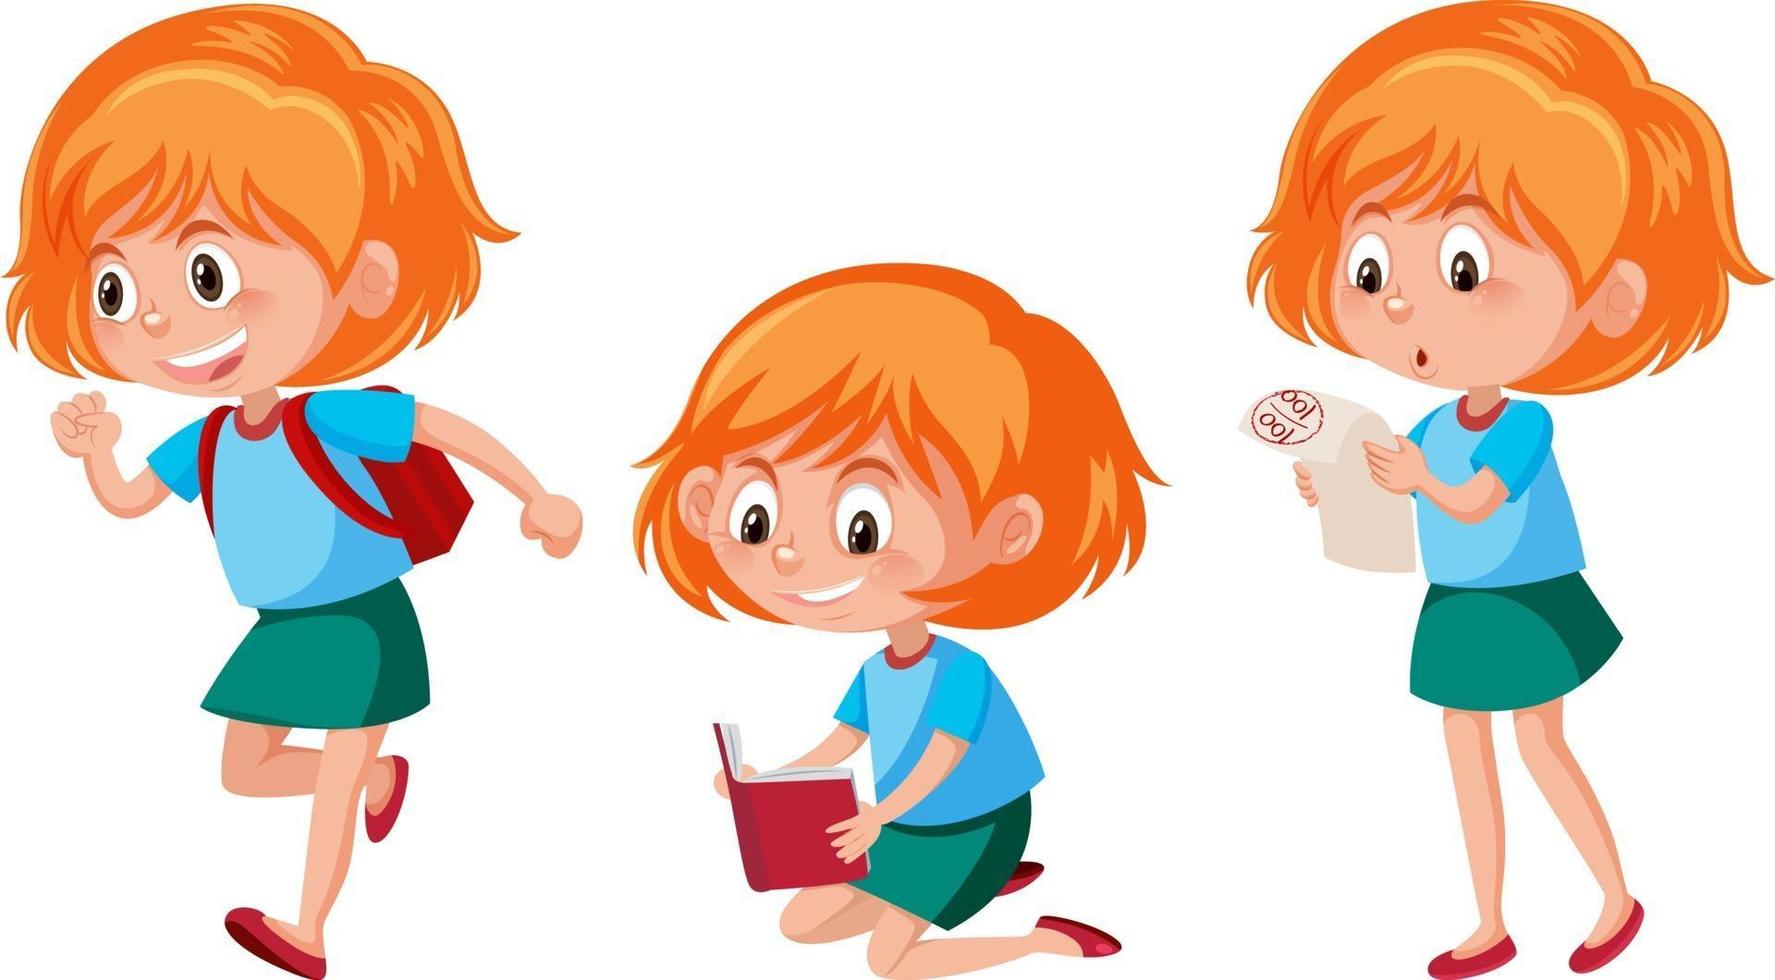 Zeichentrickfigur eines Mädchens mit verschiedenen Posen vektor